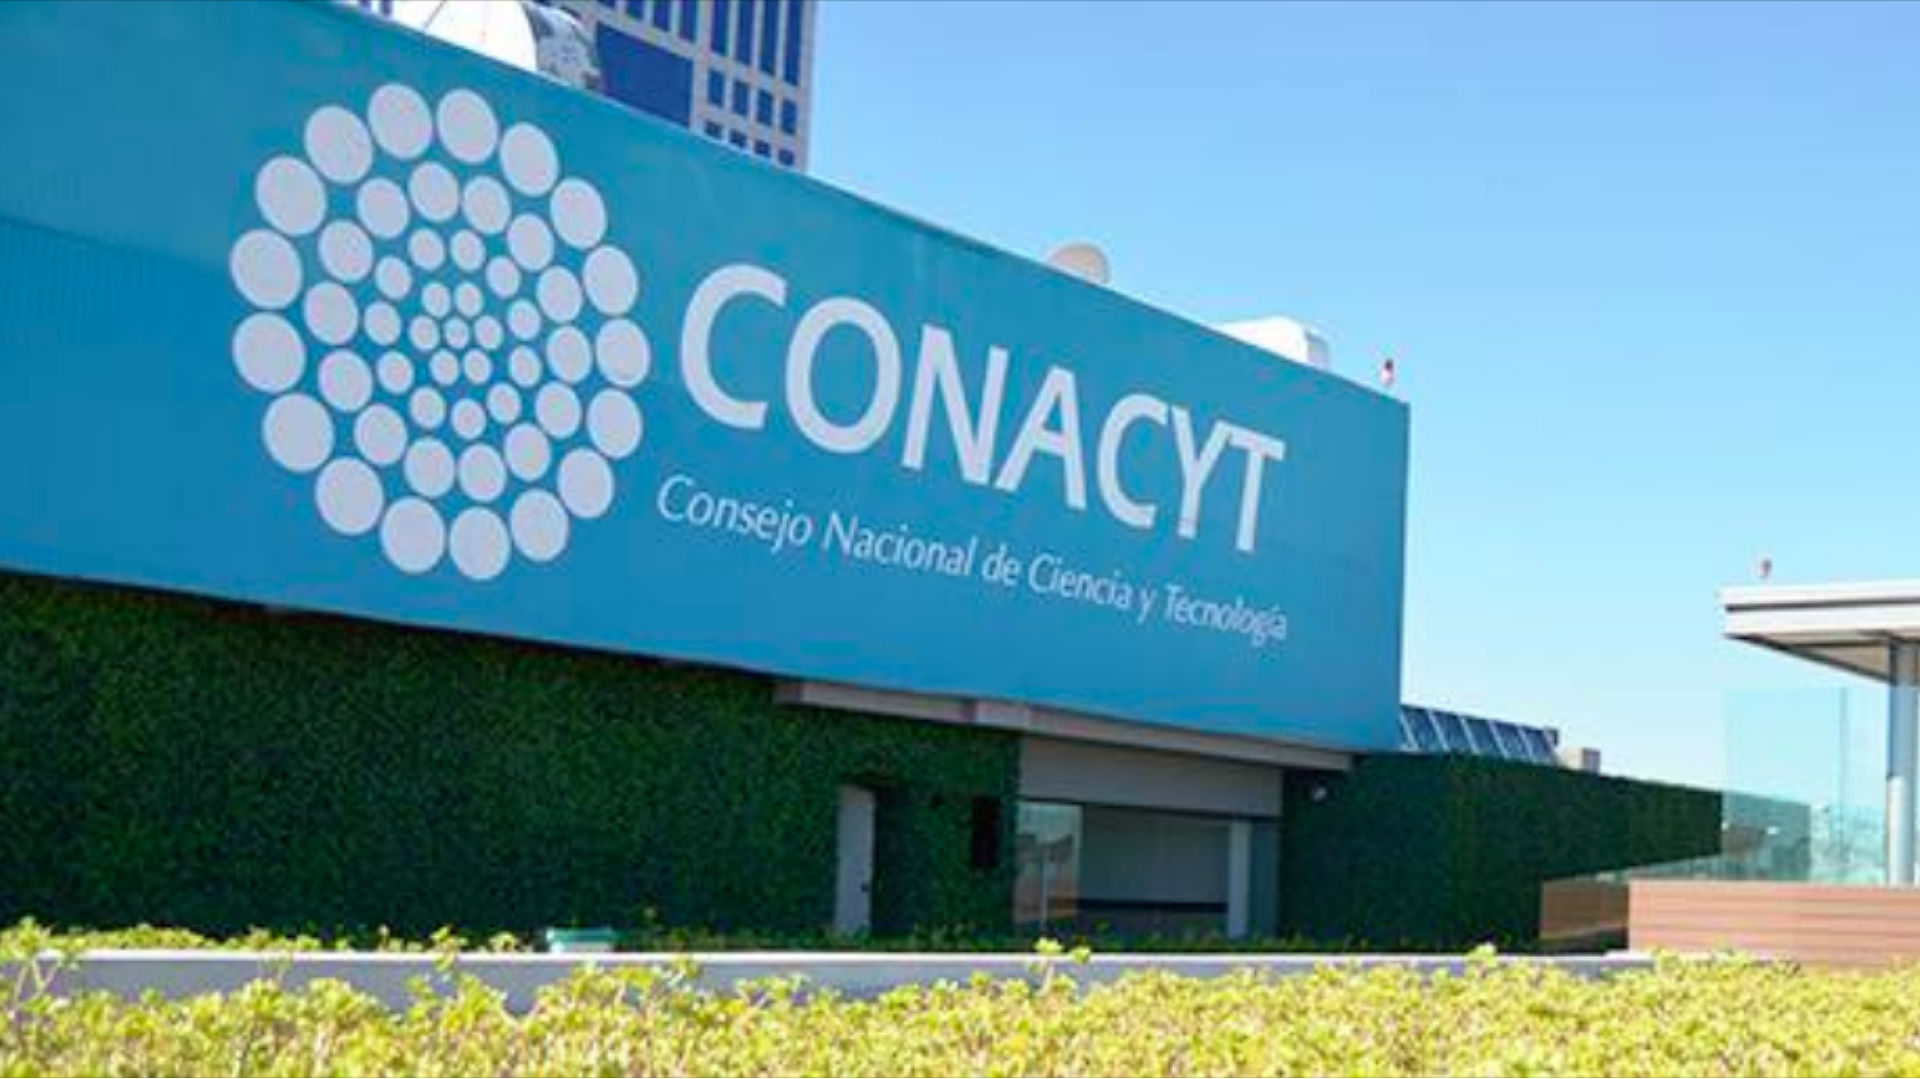 Conacyt tiene 65 Fideicomisos cuyos montos serían reorganizados   (Foto: Facebook ConacytMX)